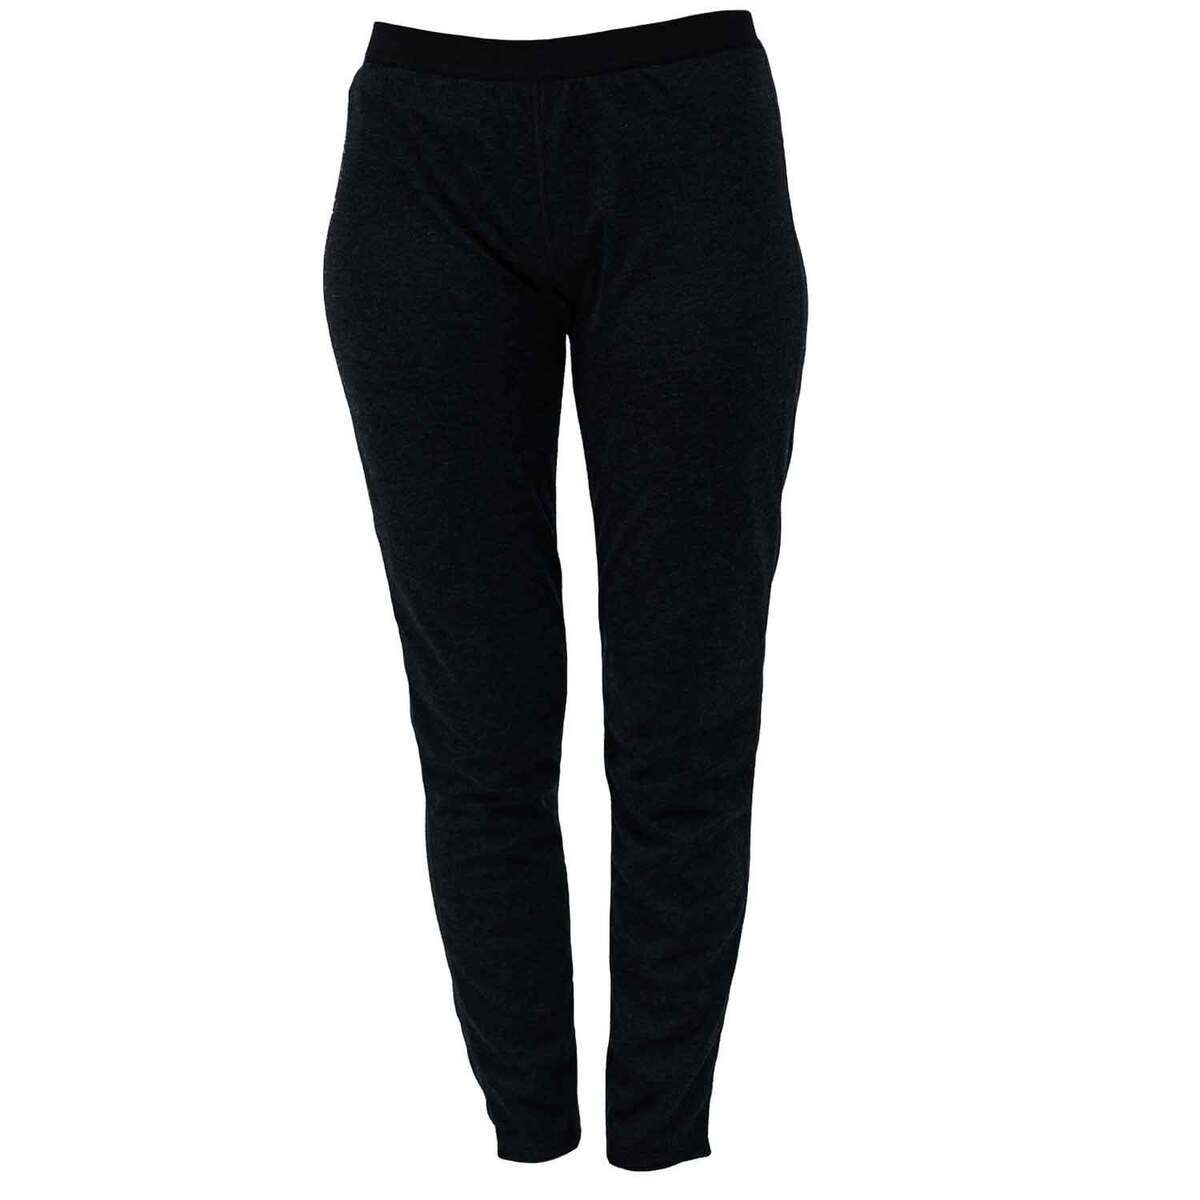 Polarmax Women's Double Layer Tight Base Layer Pants | Sportsman's ...